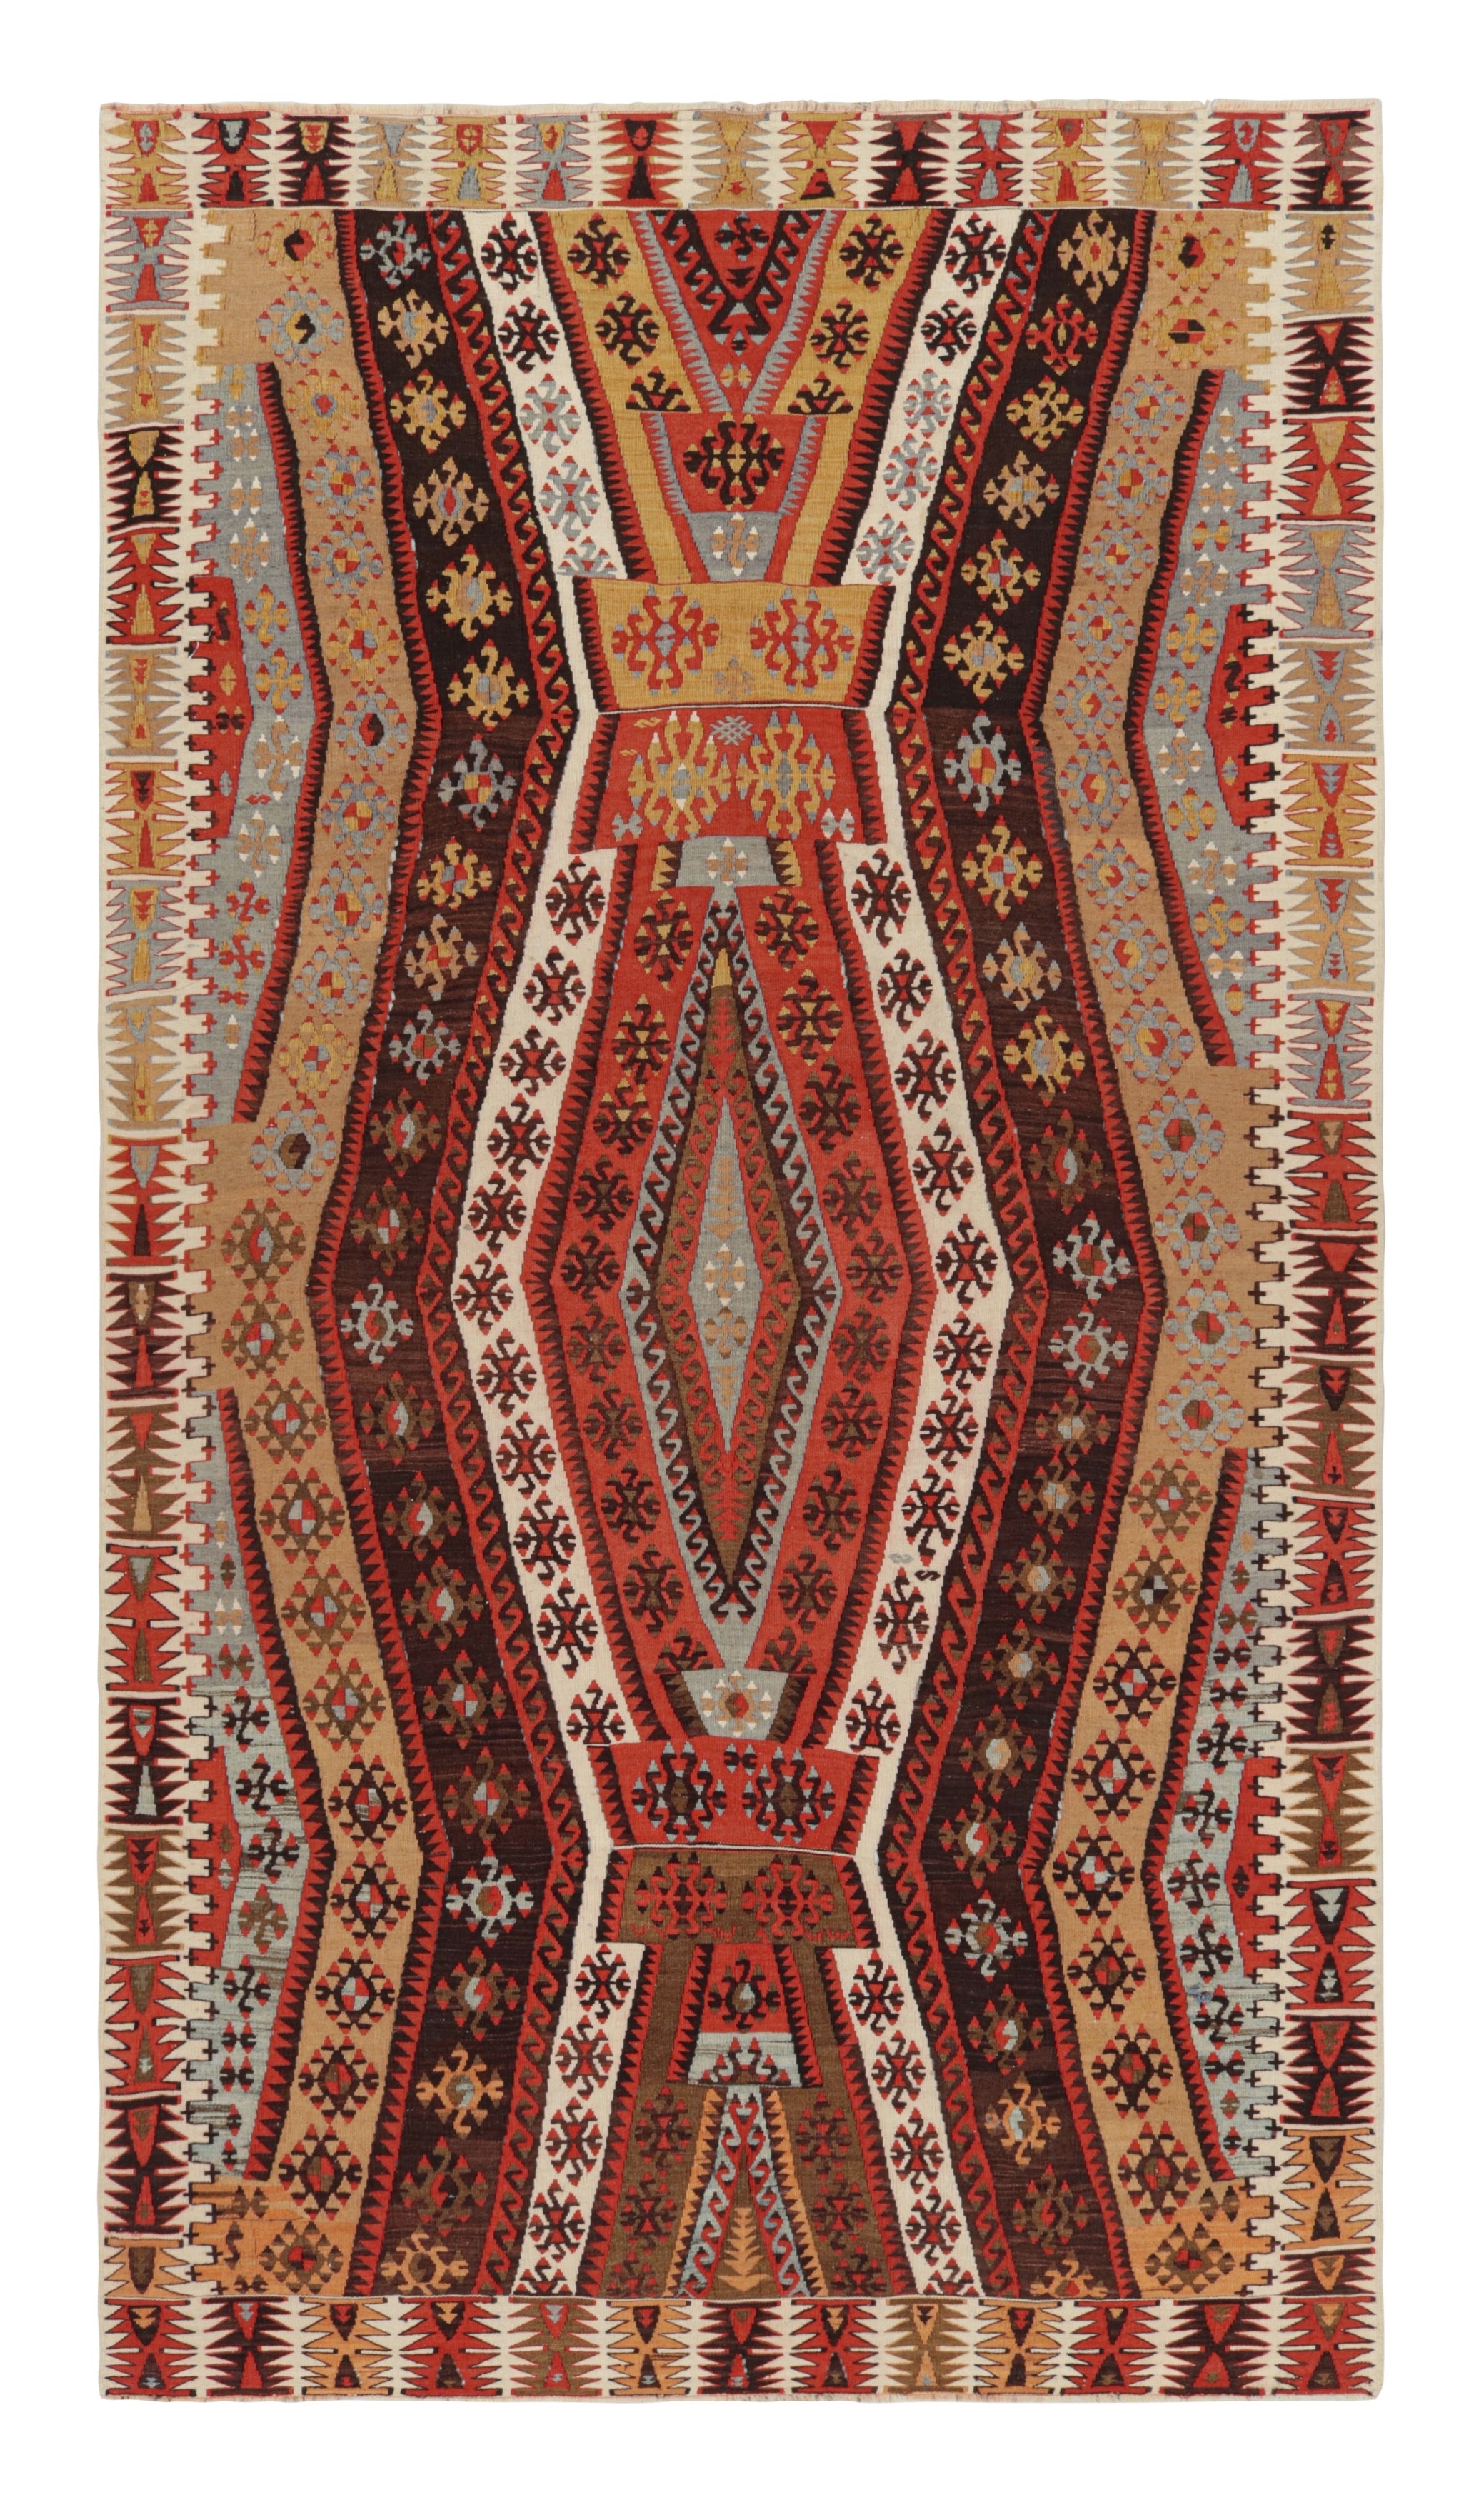 Vintage Geometric Beige Brown and Red Wool Kilim Rug by Rug & Kilim For Sale